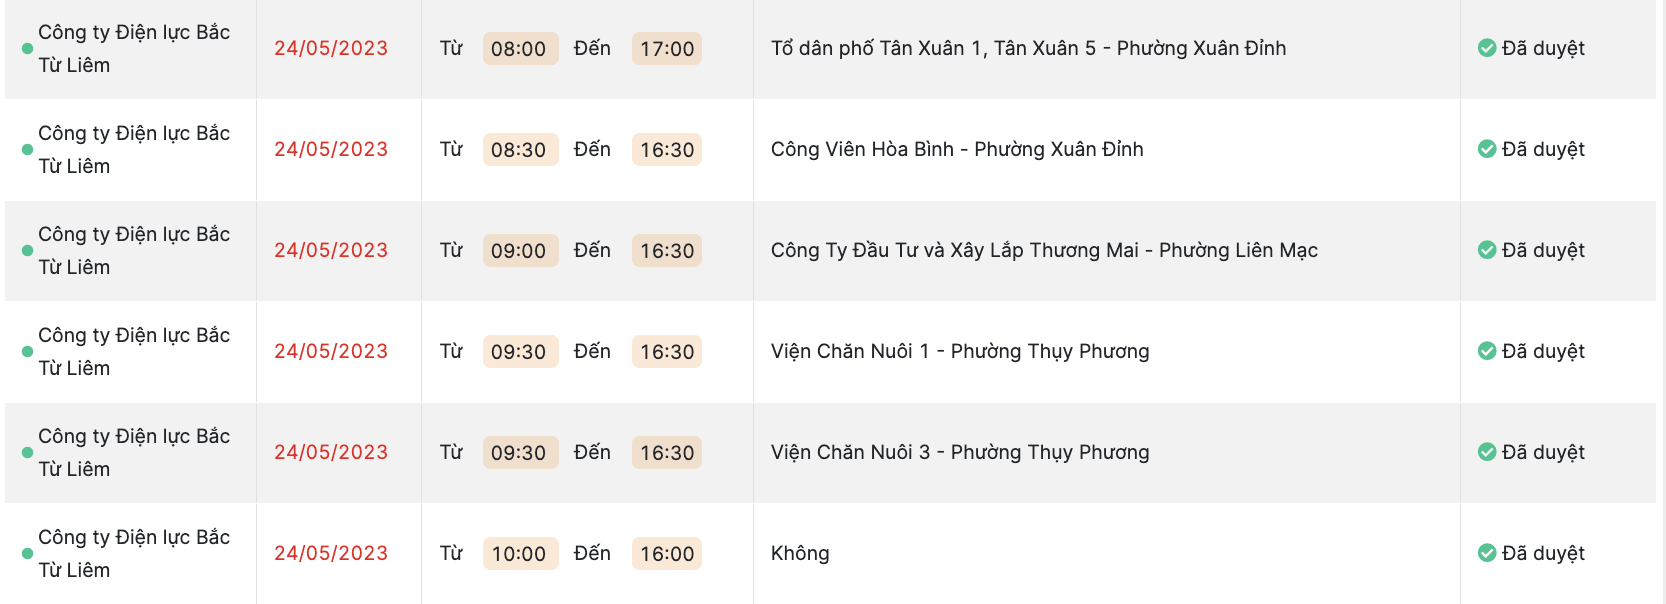 Lịch cắt điện tại Hà Nội ngày 23 và 24.5